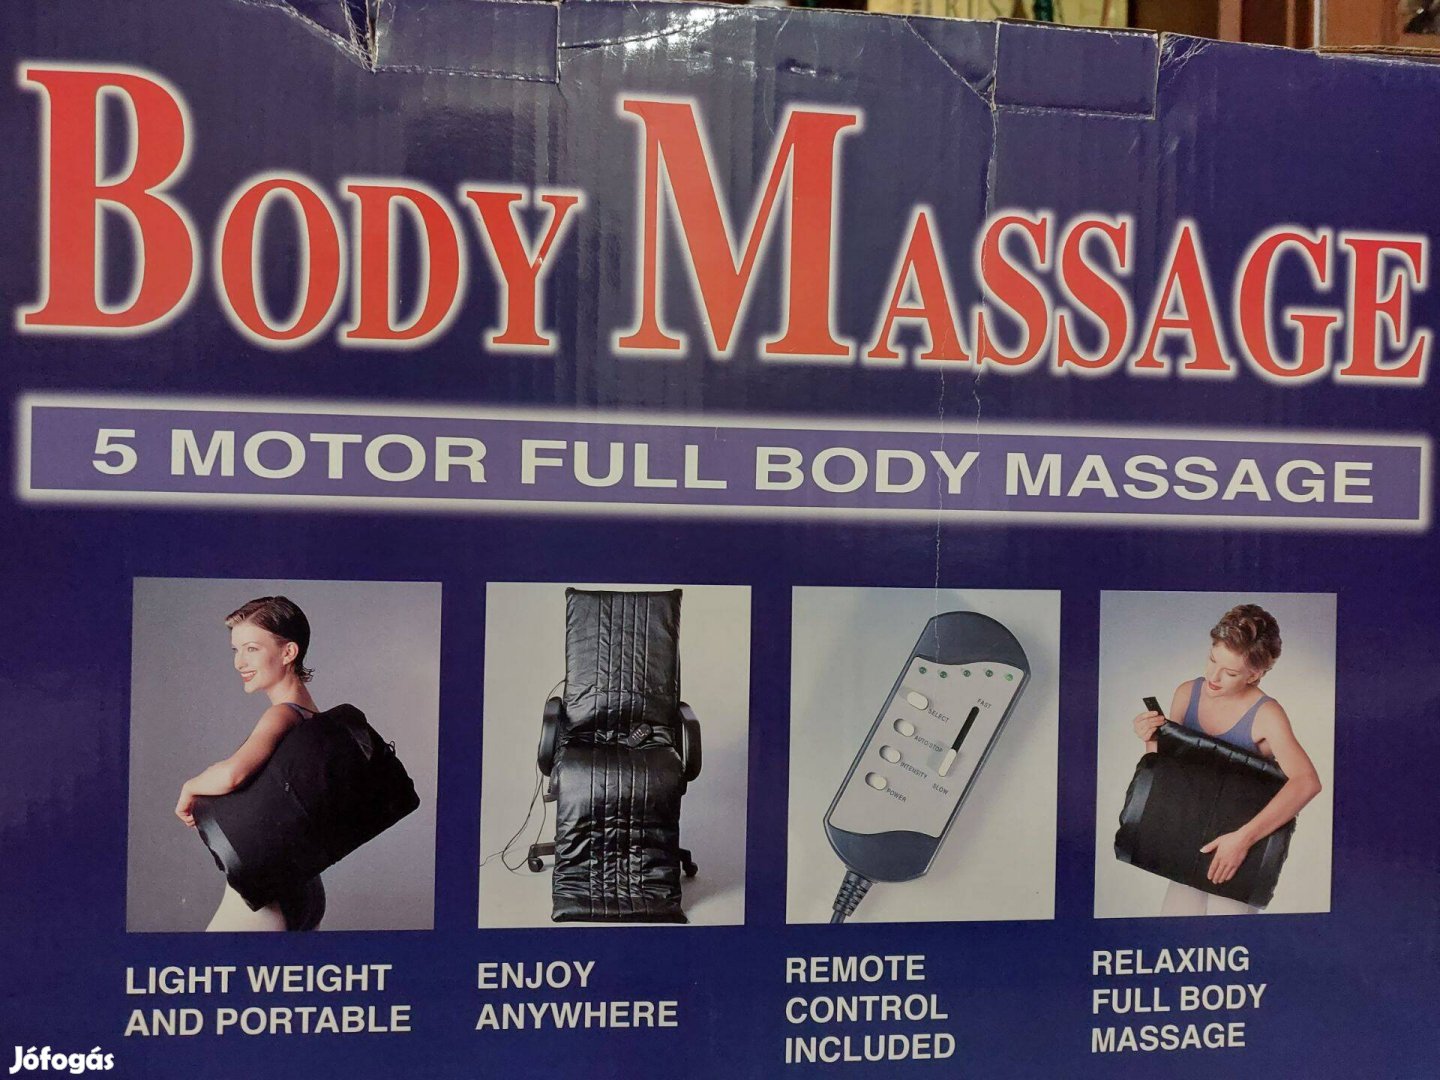 Body massage - masszázs fotelbetét